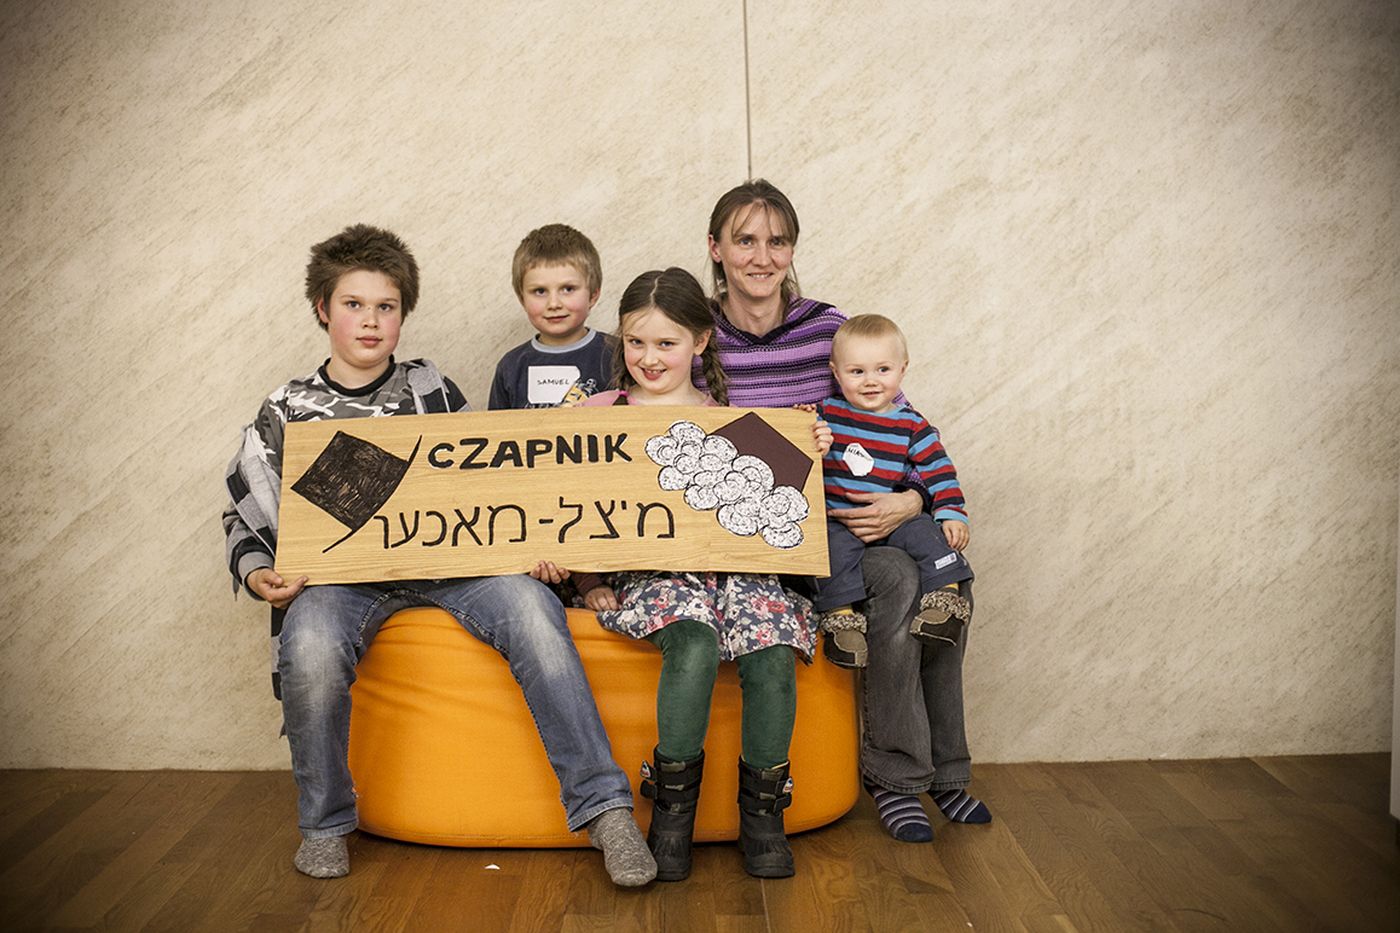 Kilkoro dzieci siedzi na pufie. Dwoje z nich trzyma tabliczkę z napisem Czapnik.